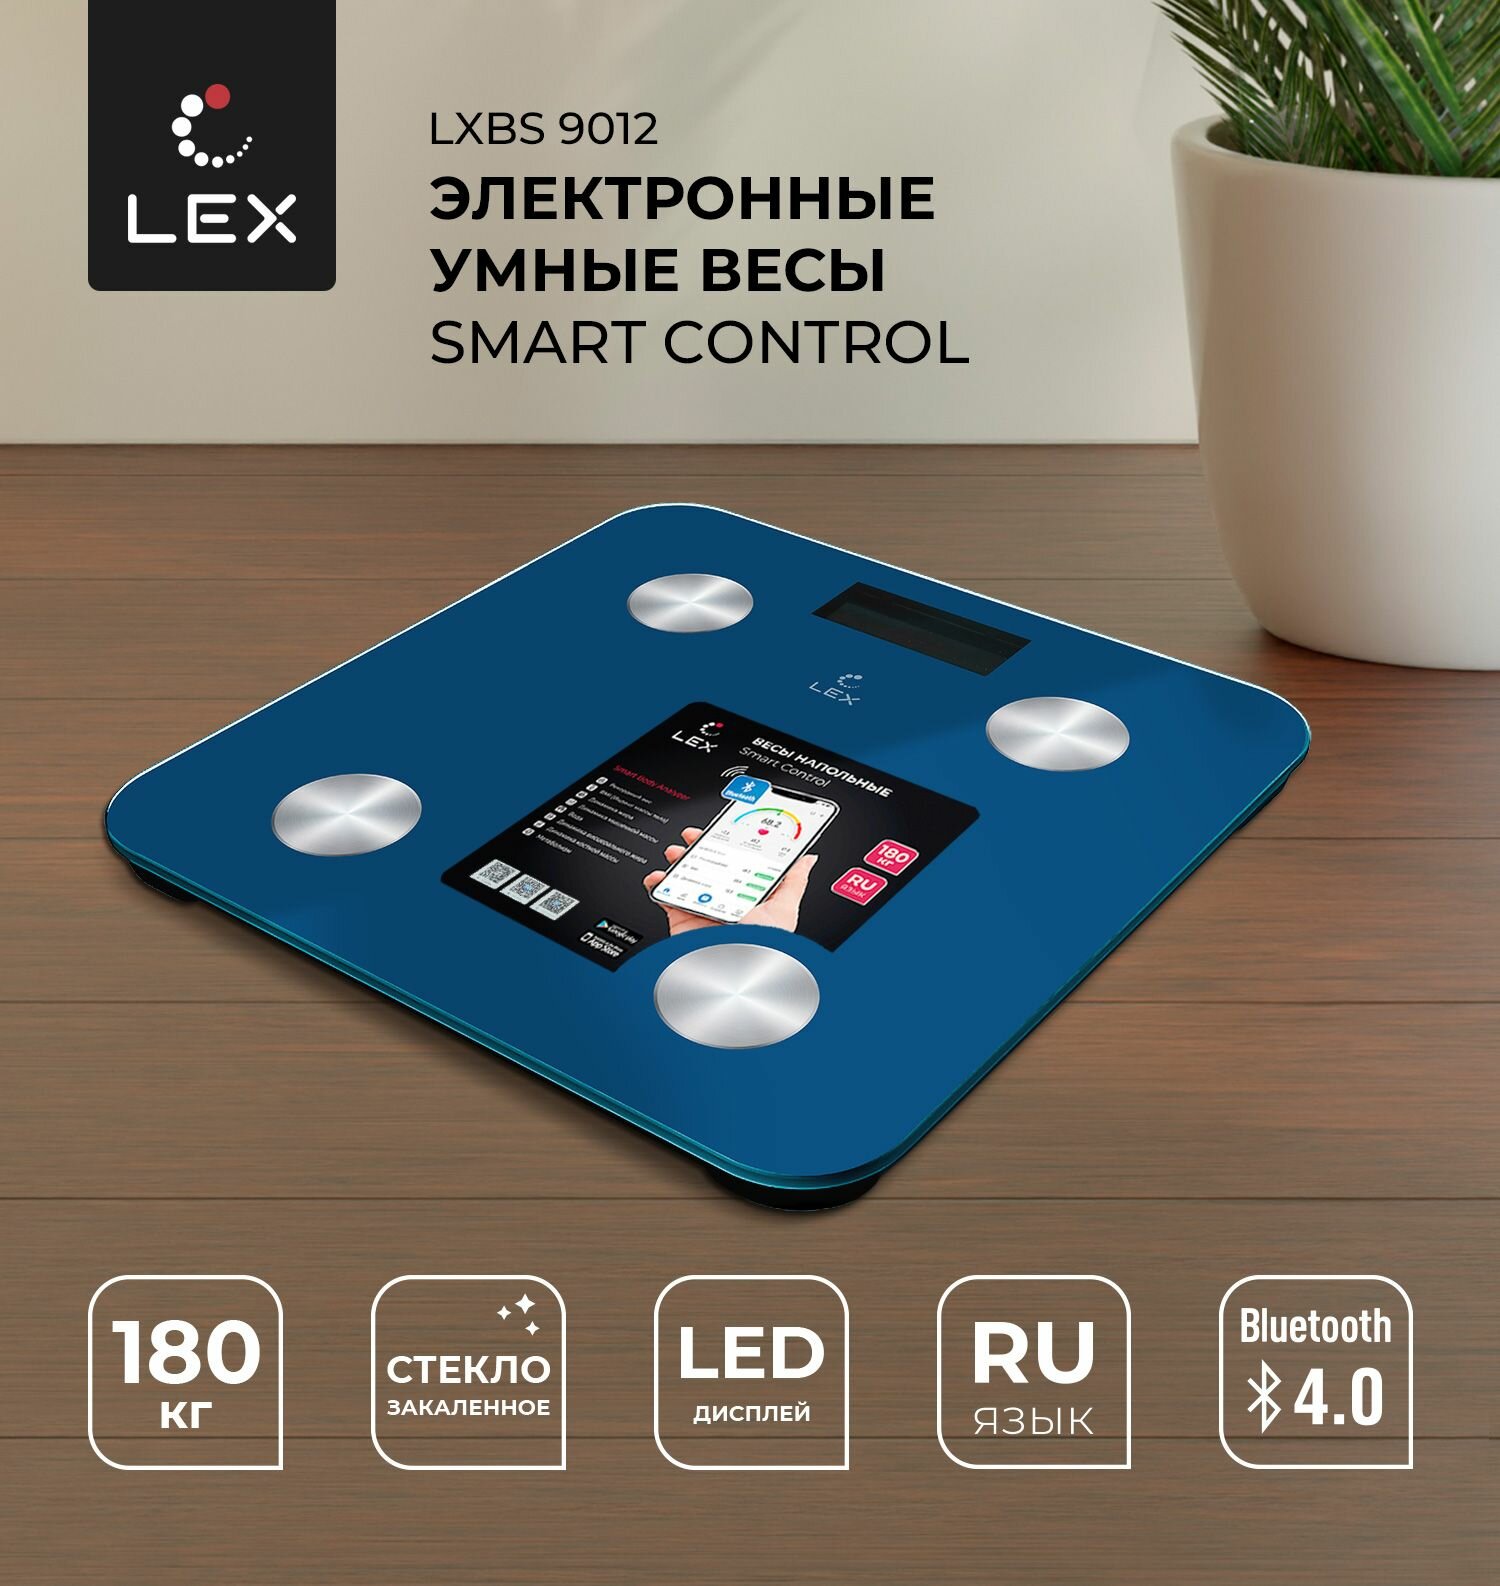 Напольные электронные умные весы LEX LXBS 9012, SMART CONTROL, стеклянные, до 180кг, Bluetooth